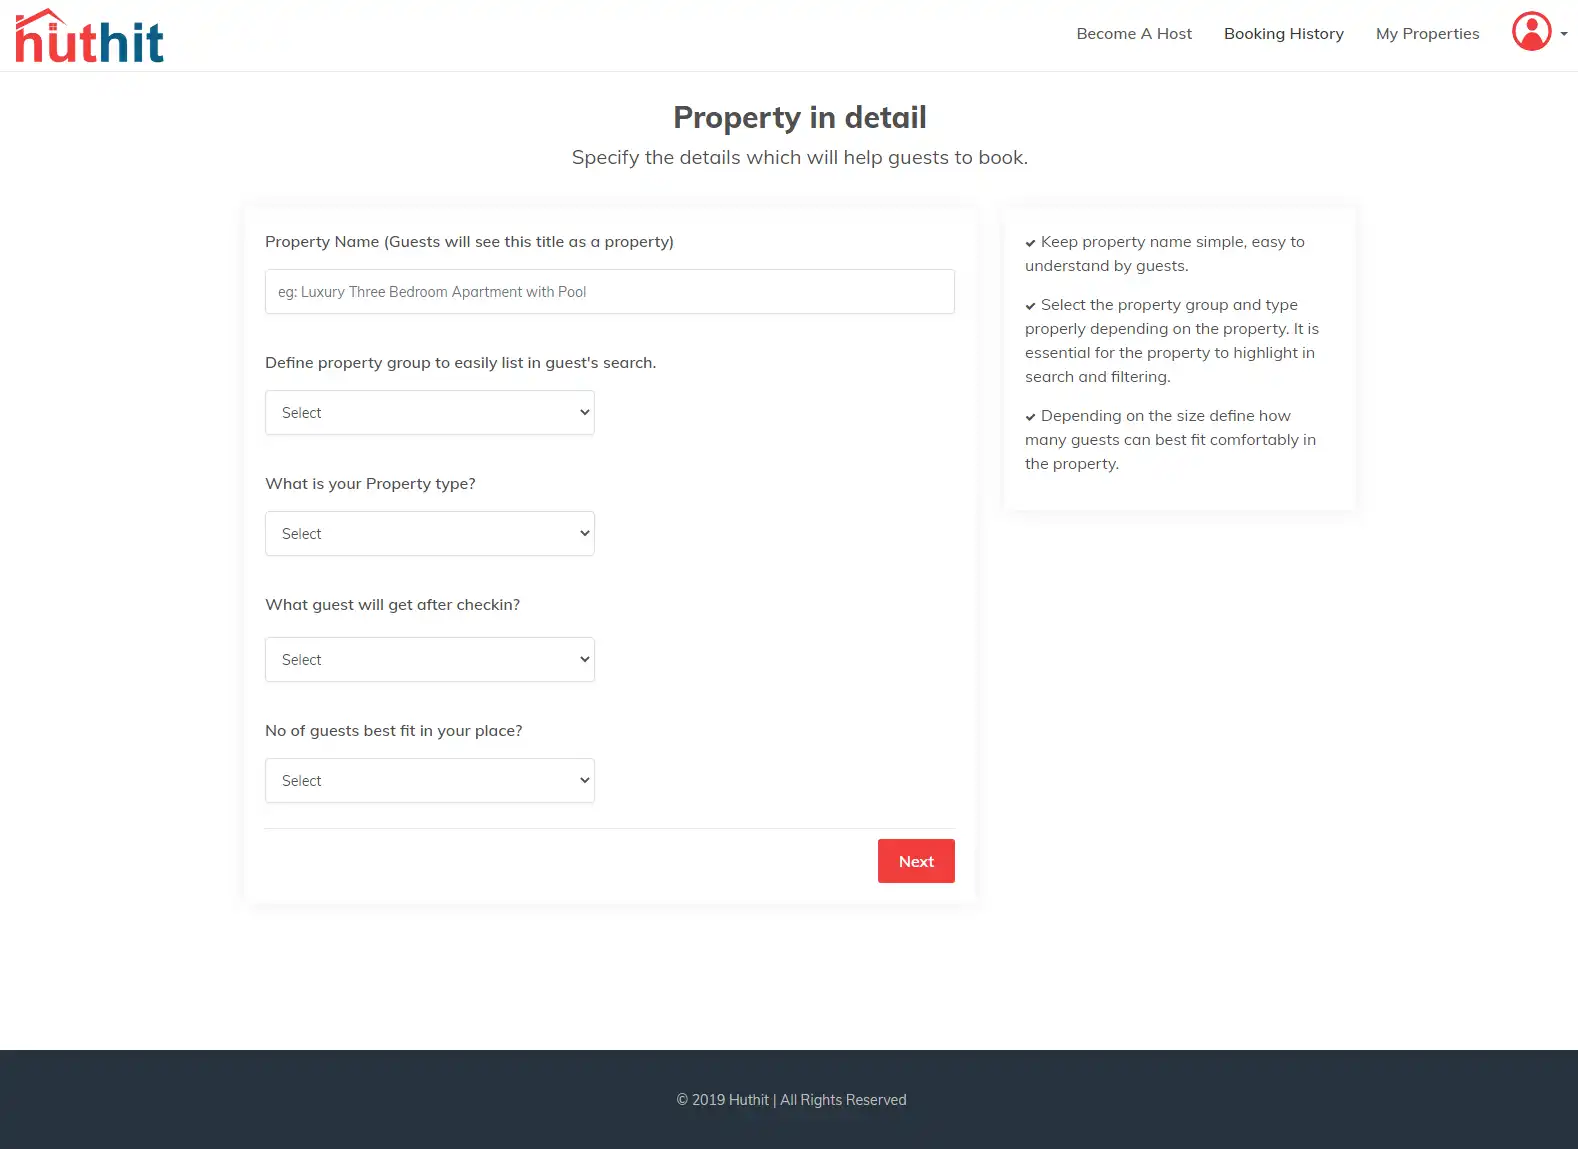 Huthit- basic property details